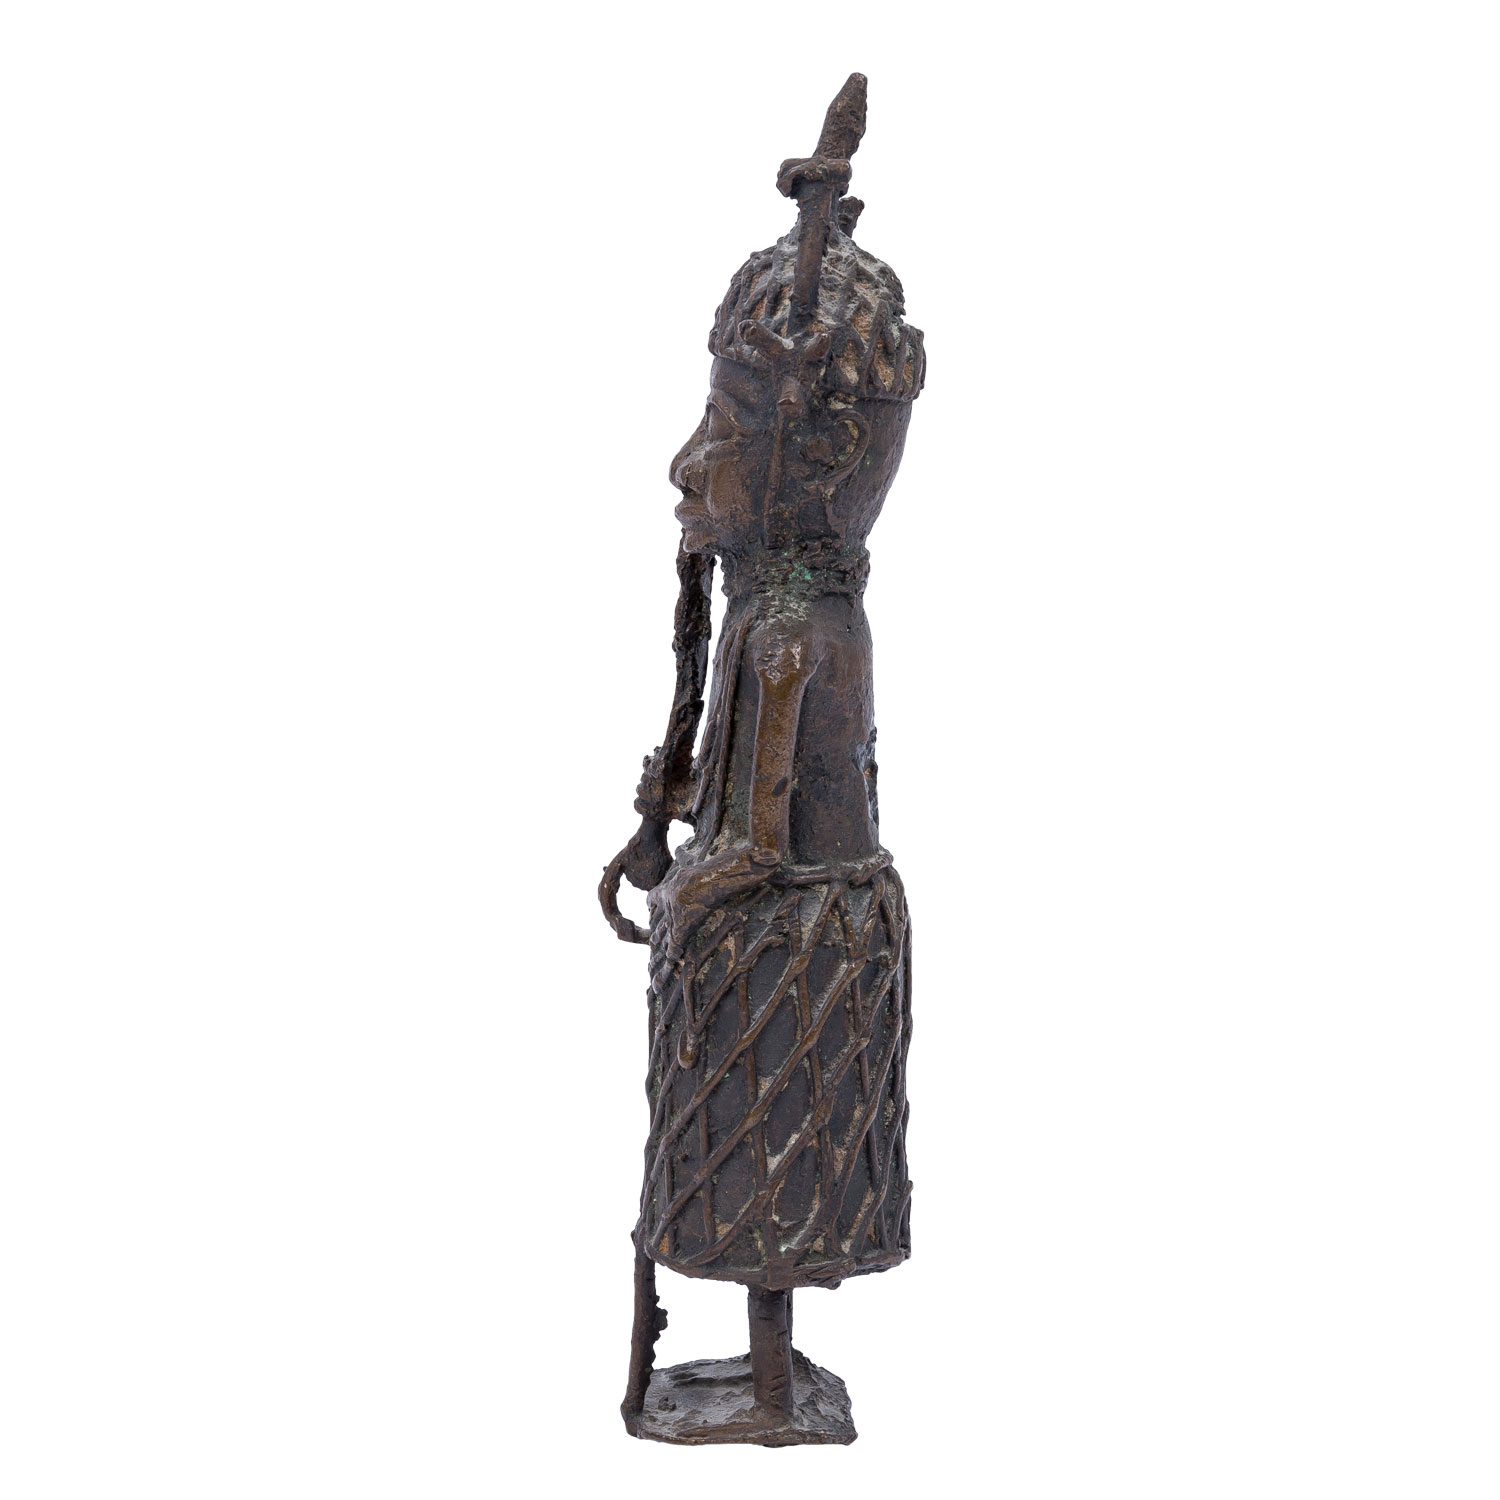 Benin Krieger aus Bronze. NIGERIA/AFRIKA, 19. Jh. oder früher. - Image 2 of 6